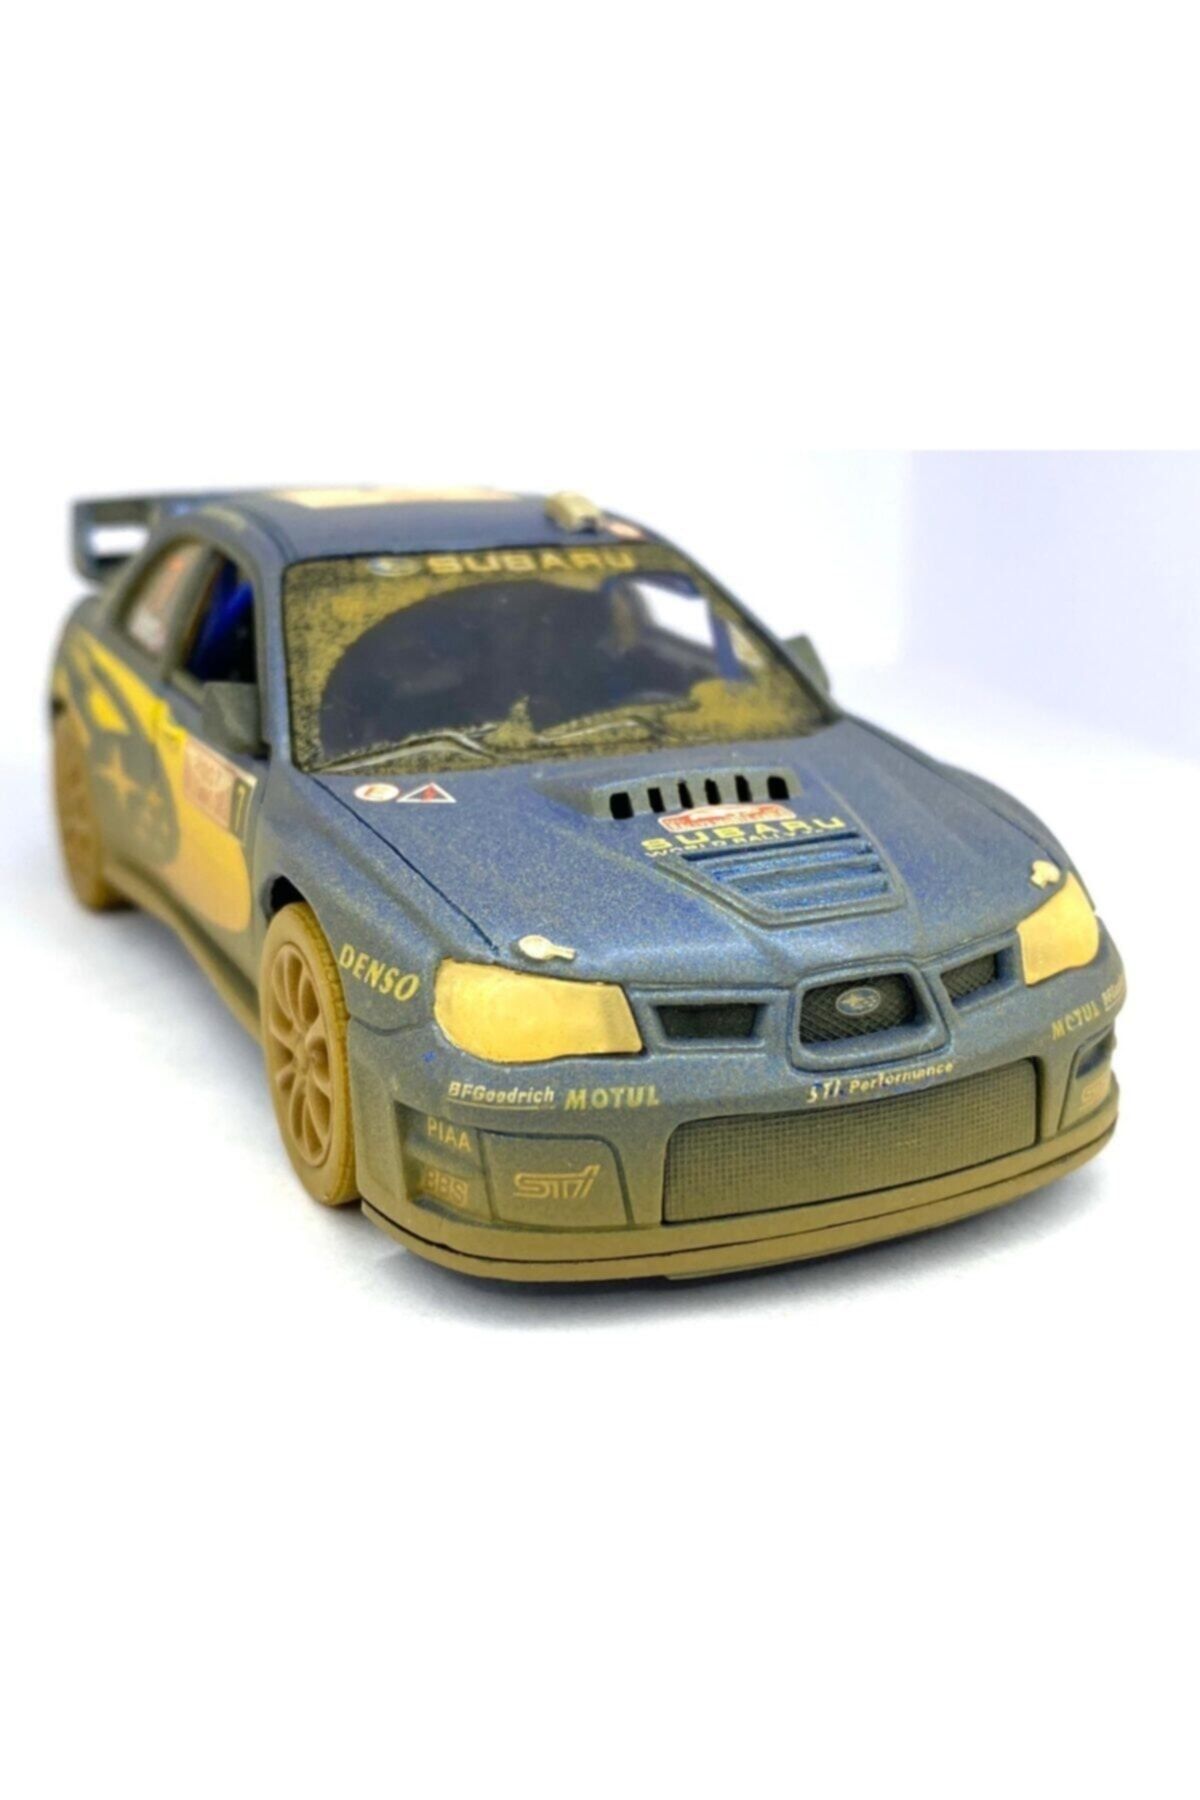 Kinsmart Subaru Impreza Wrc 2007 (çamurlu) - Çek Bırak 5inch. Lisanslı Model Araba, Oyuncak Araba 1:36